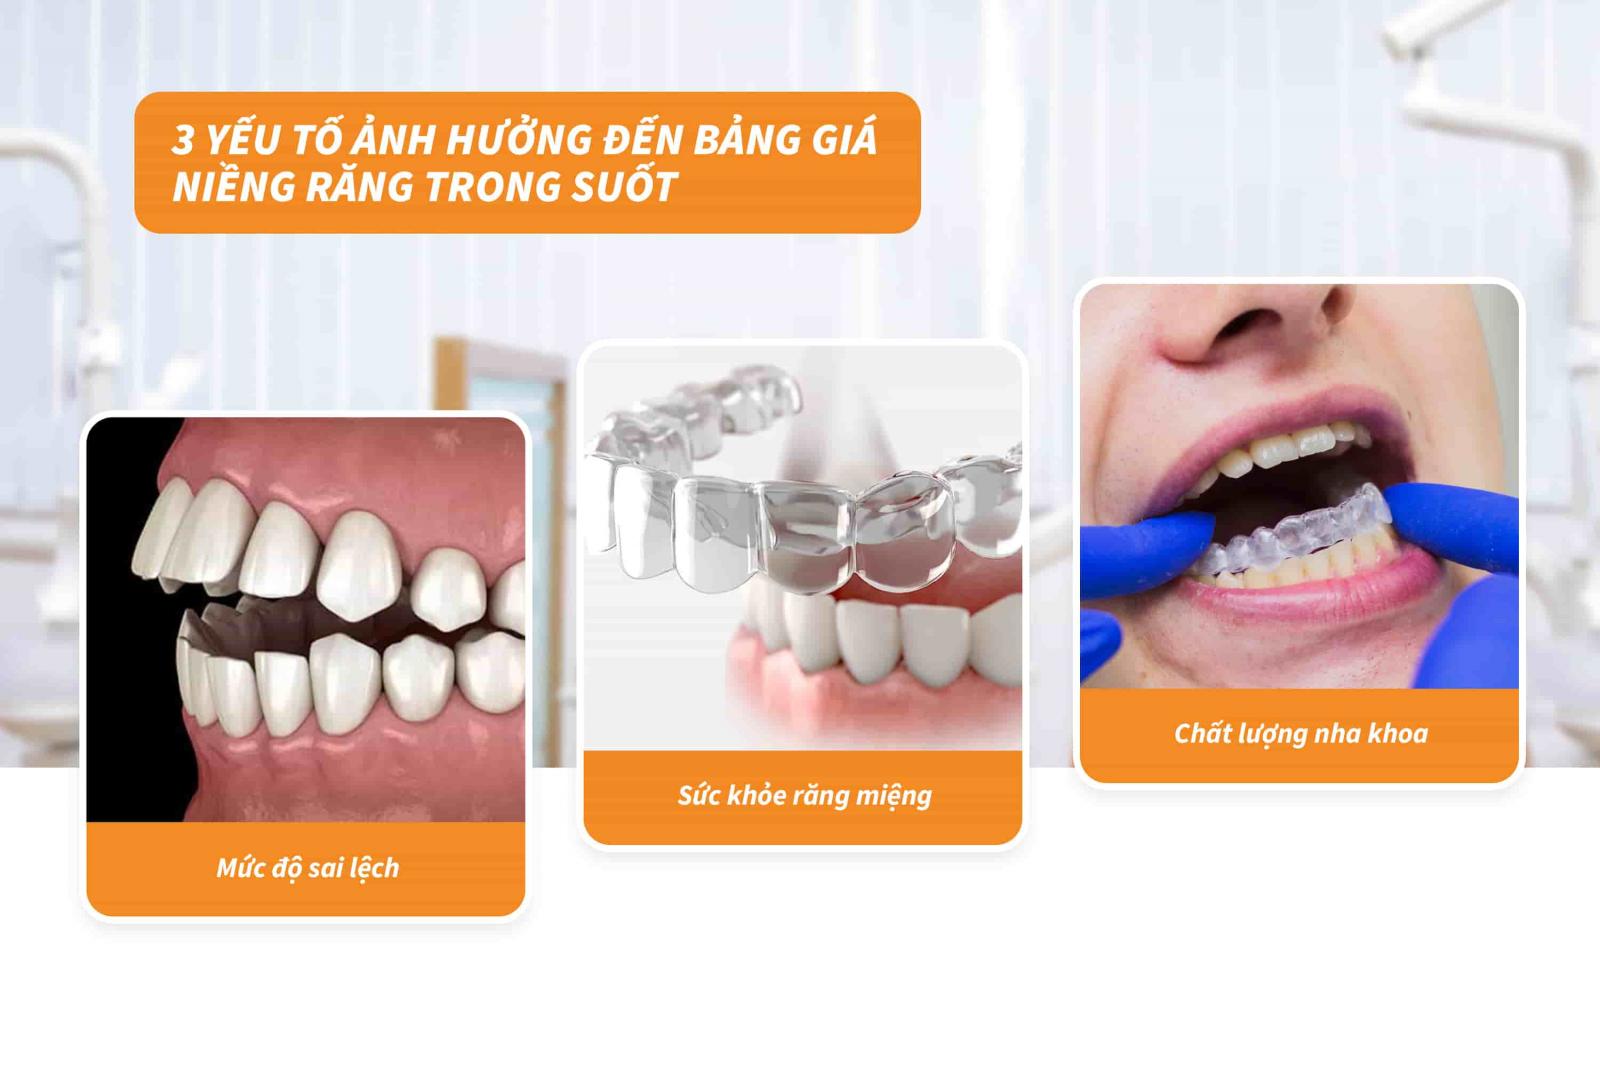 03 yếu tố ảnh hưởng đến bảng giá niềng răng trong suốt